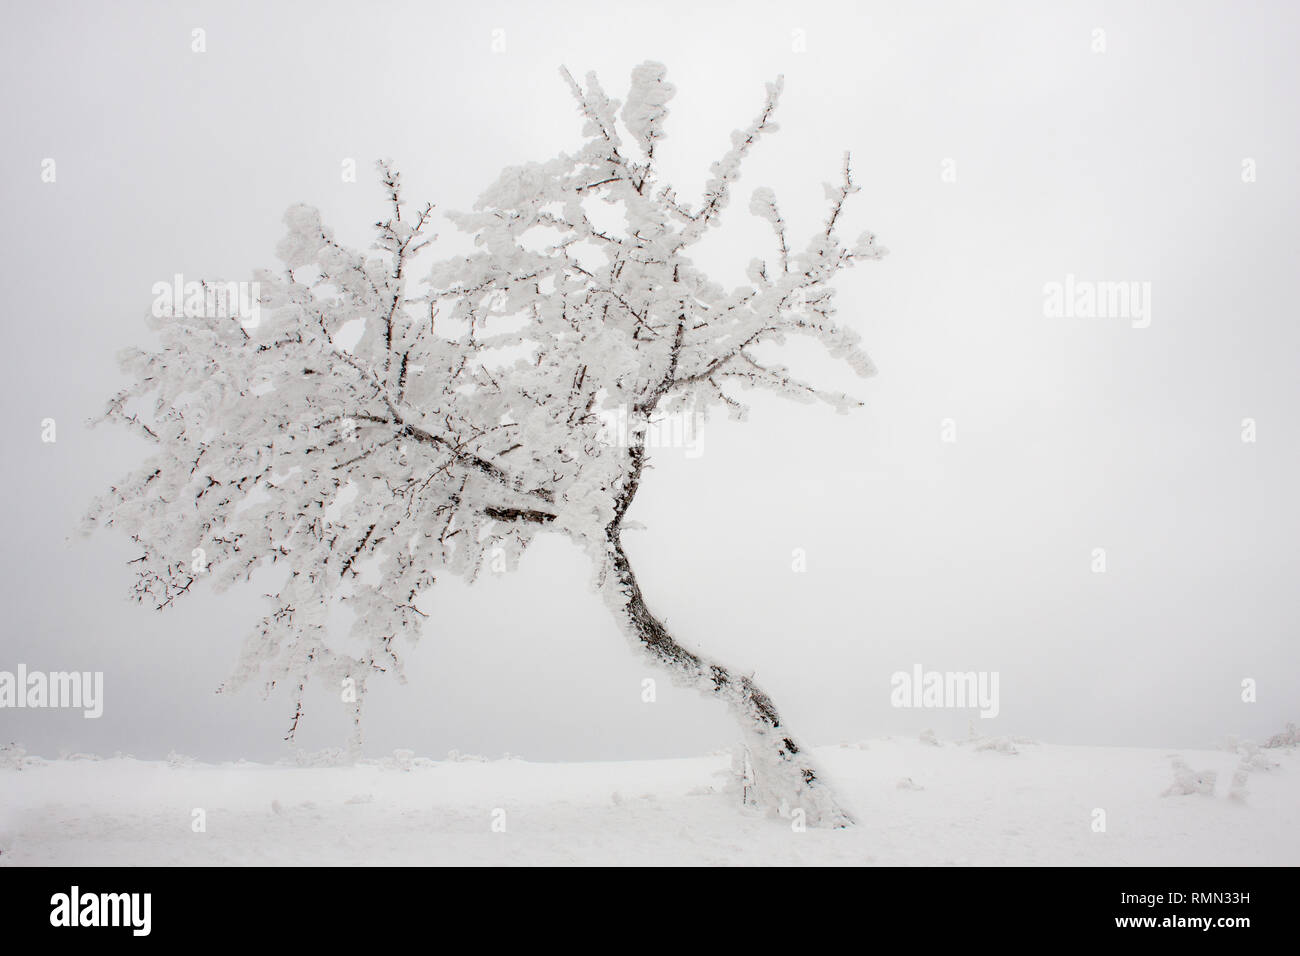 Vista panoramica di un albero coperto di brina e ghiaccio dopo una tempesta di neve in una fredda giornata invernale Foto Stock